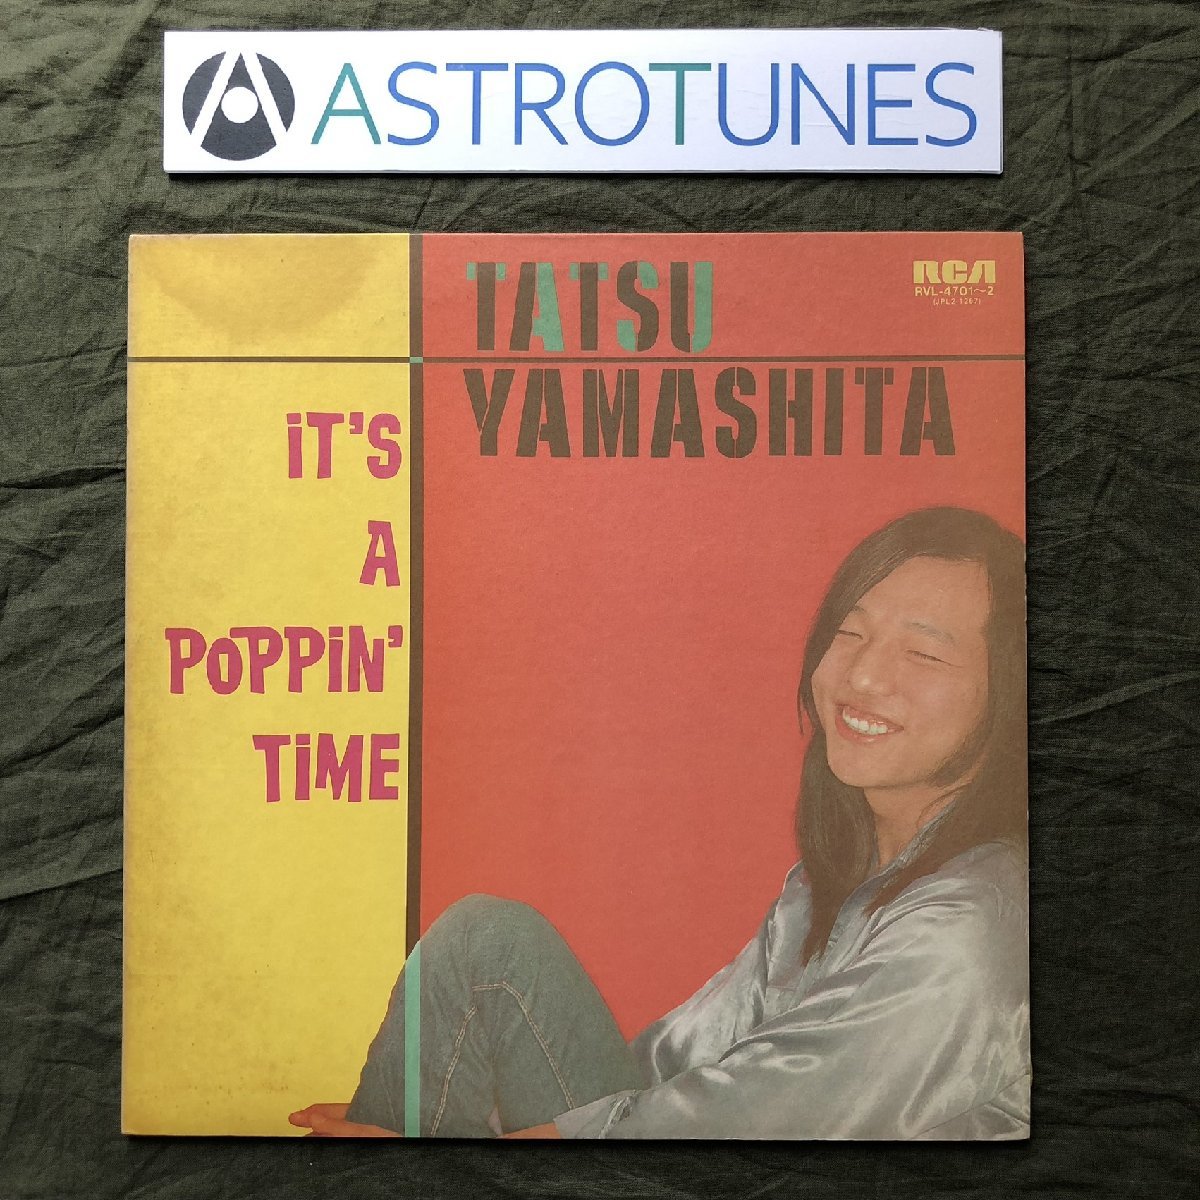 傷なし美盤 1978年 山下達郎 Tatsuro Yamashita 2枚組LPレコード イッツ・ア・ポッピン・タイム It's A Poppin' Time 名盤 坂本龍一_画像1